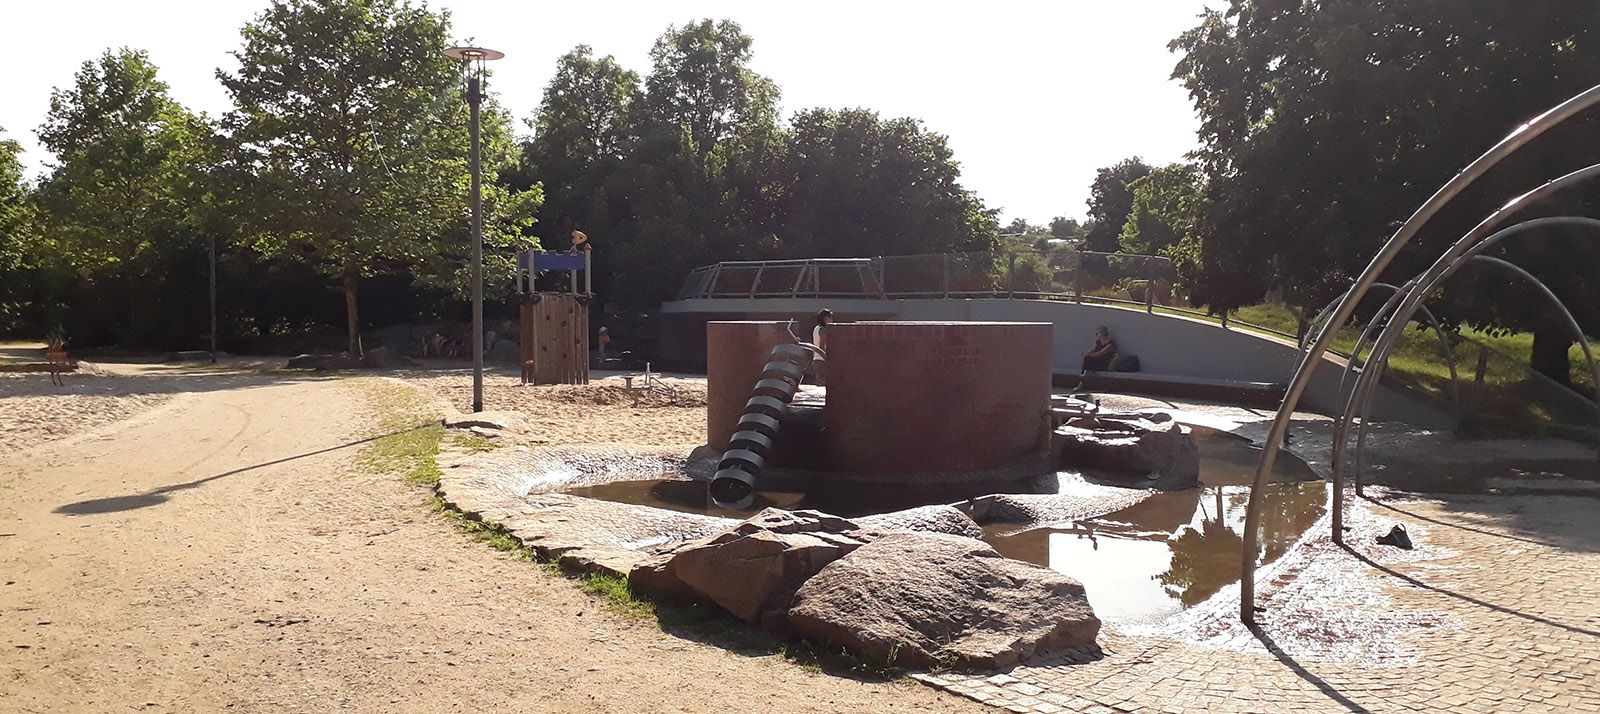 Abb. 3: Der Wasserspielplatz im grünen Lutschgenpark bietet Abkühlung an heißen Sommertagen